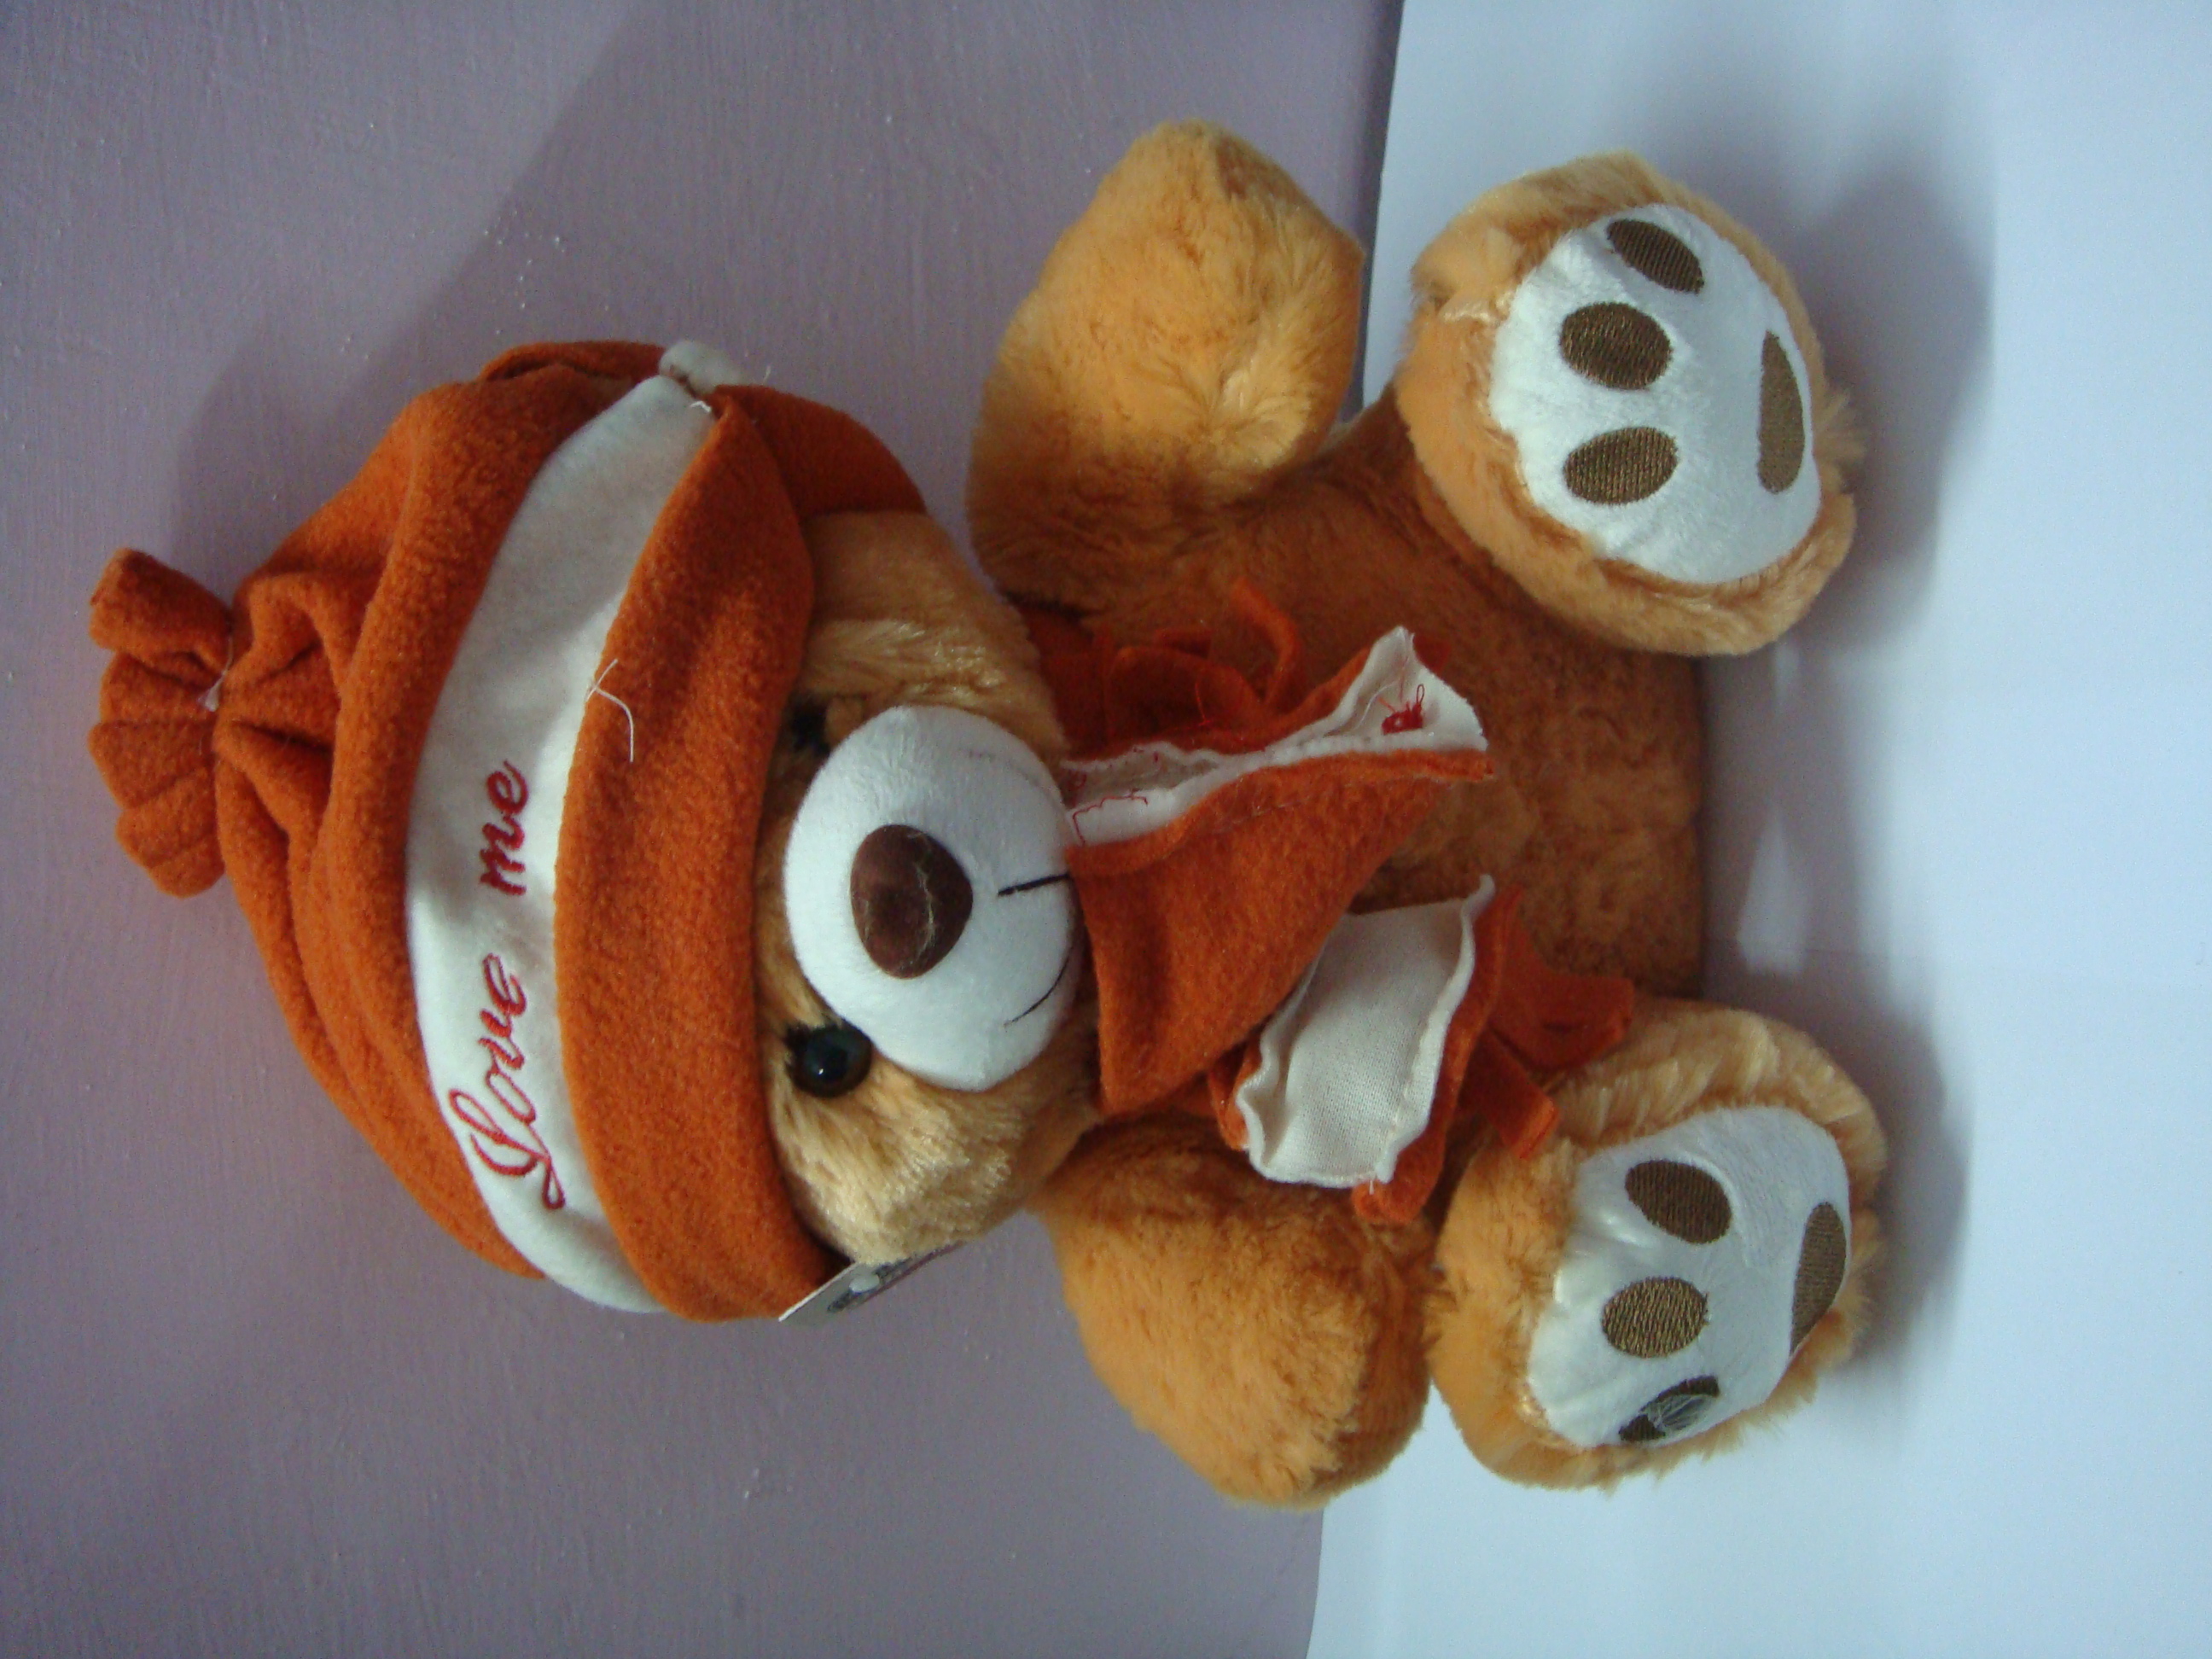 Teddy Bear, Baby, Bear, Birthday, Cuddly, HQ Photo